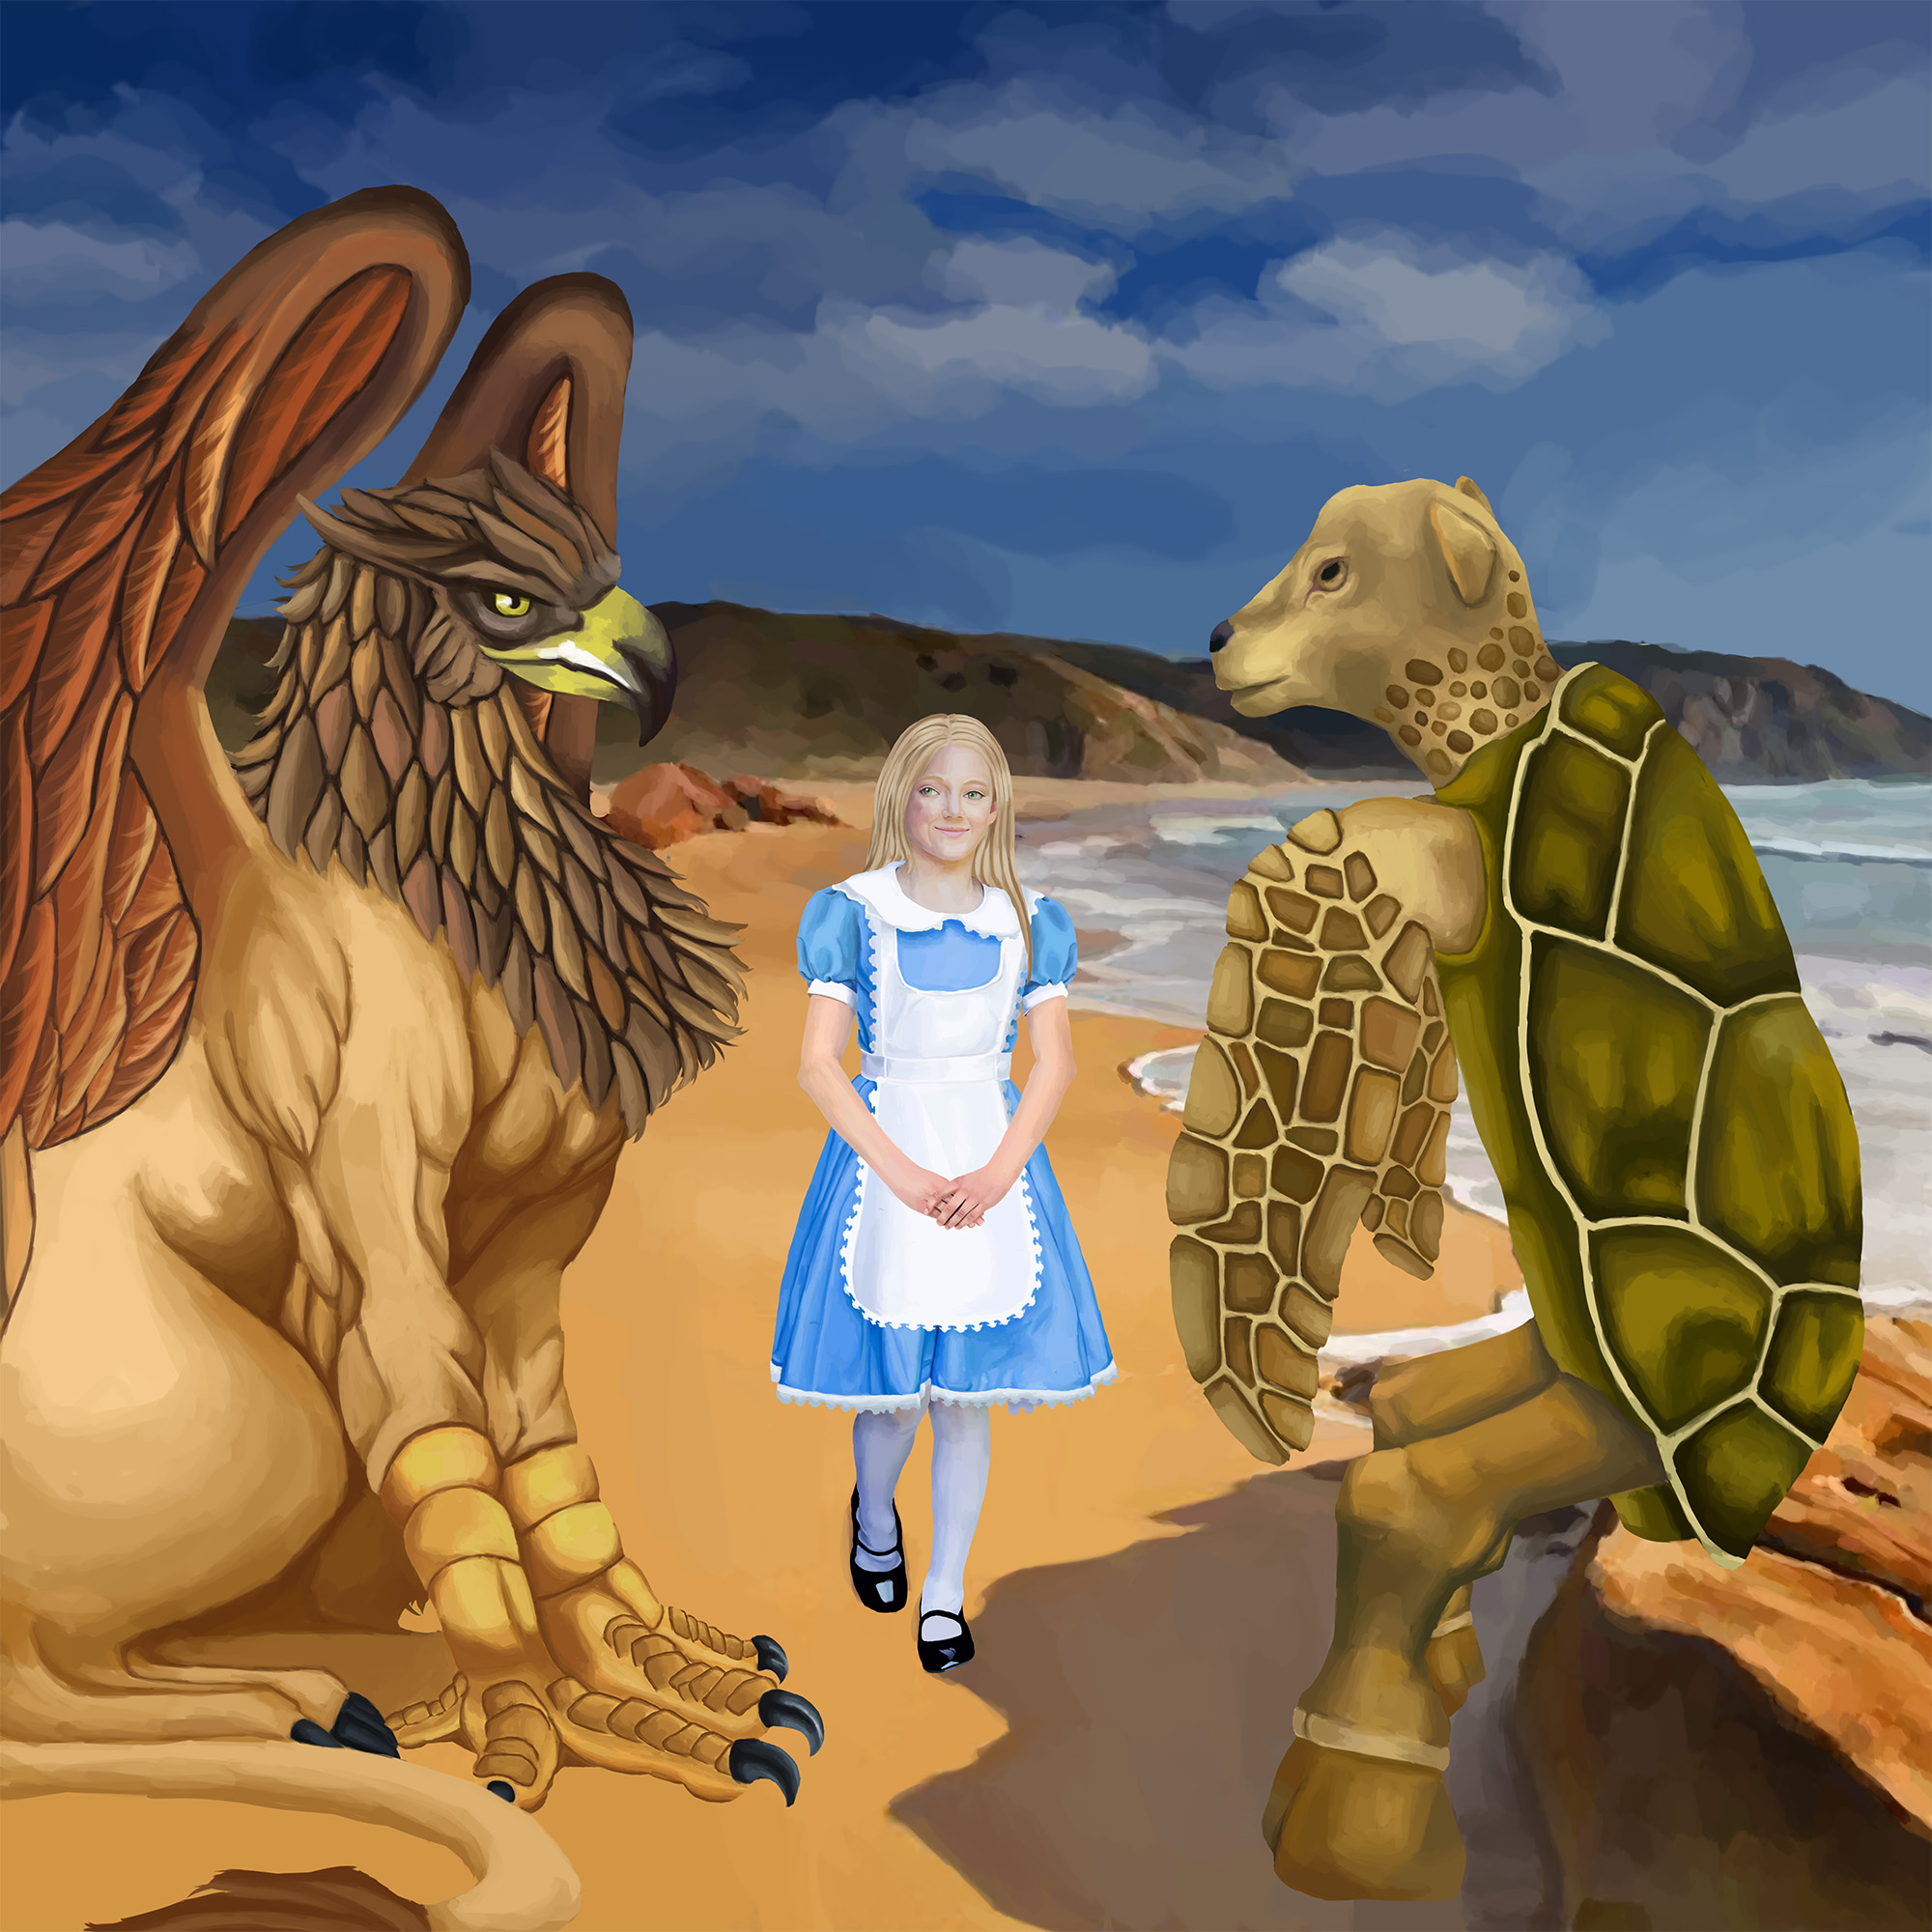 Glaiza Visits Wonderland: The Mock Turtle's Story Image